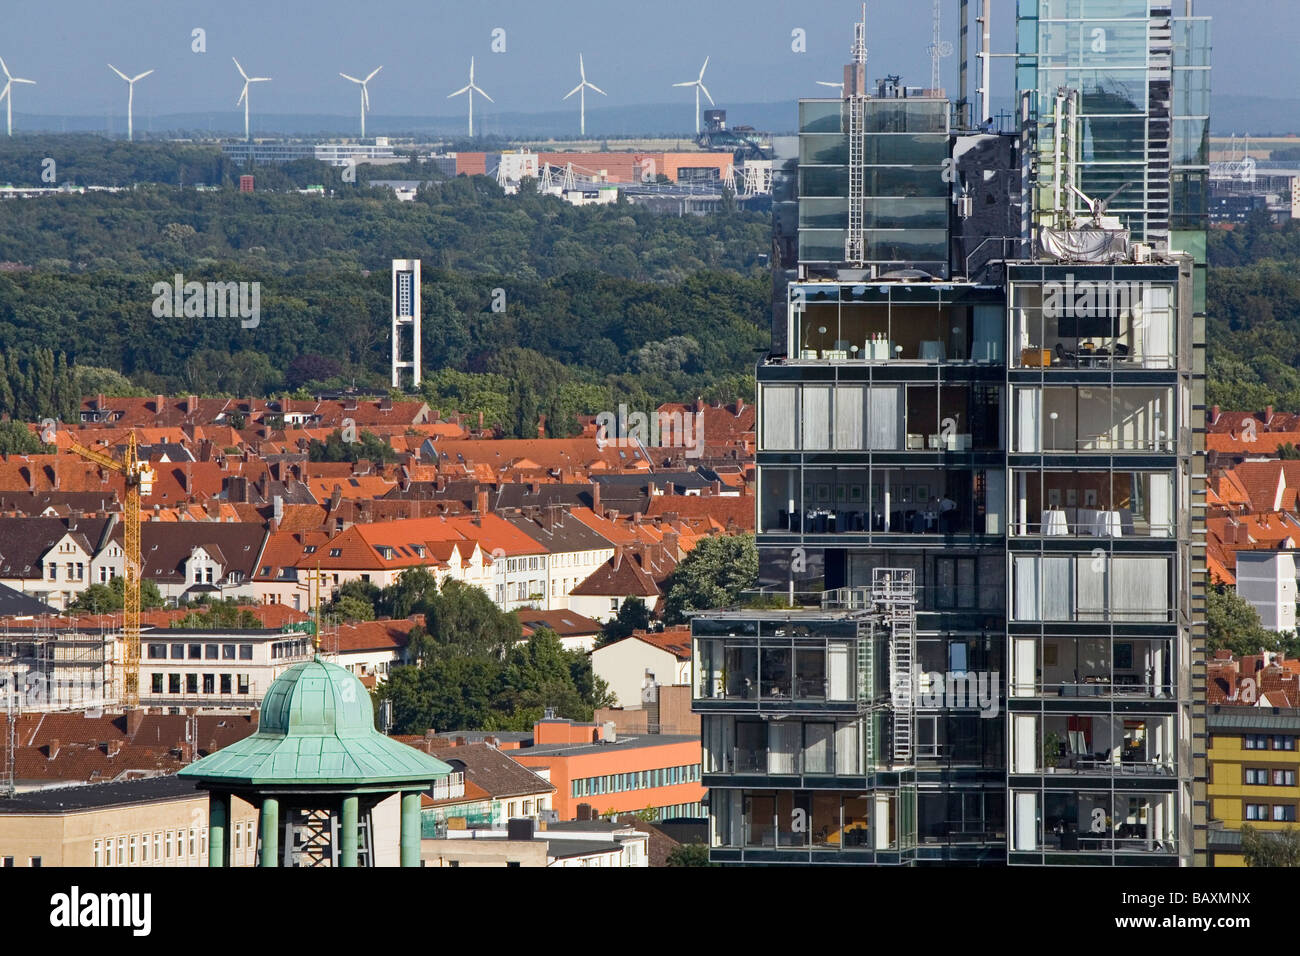 Hannover-Stadtzentrum, mit Blick auf die Nord LB Nord Deutsche Bank über die Dächer, die grüne Stadt Gürtel und Windkraftanlagen Stockfoto